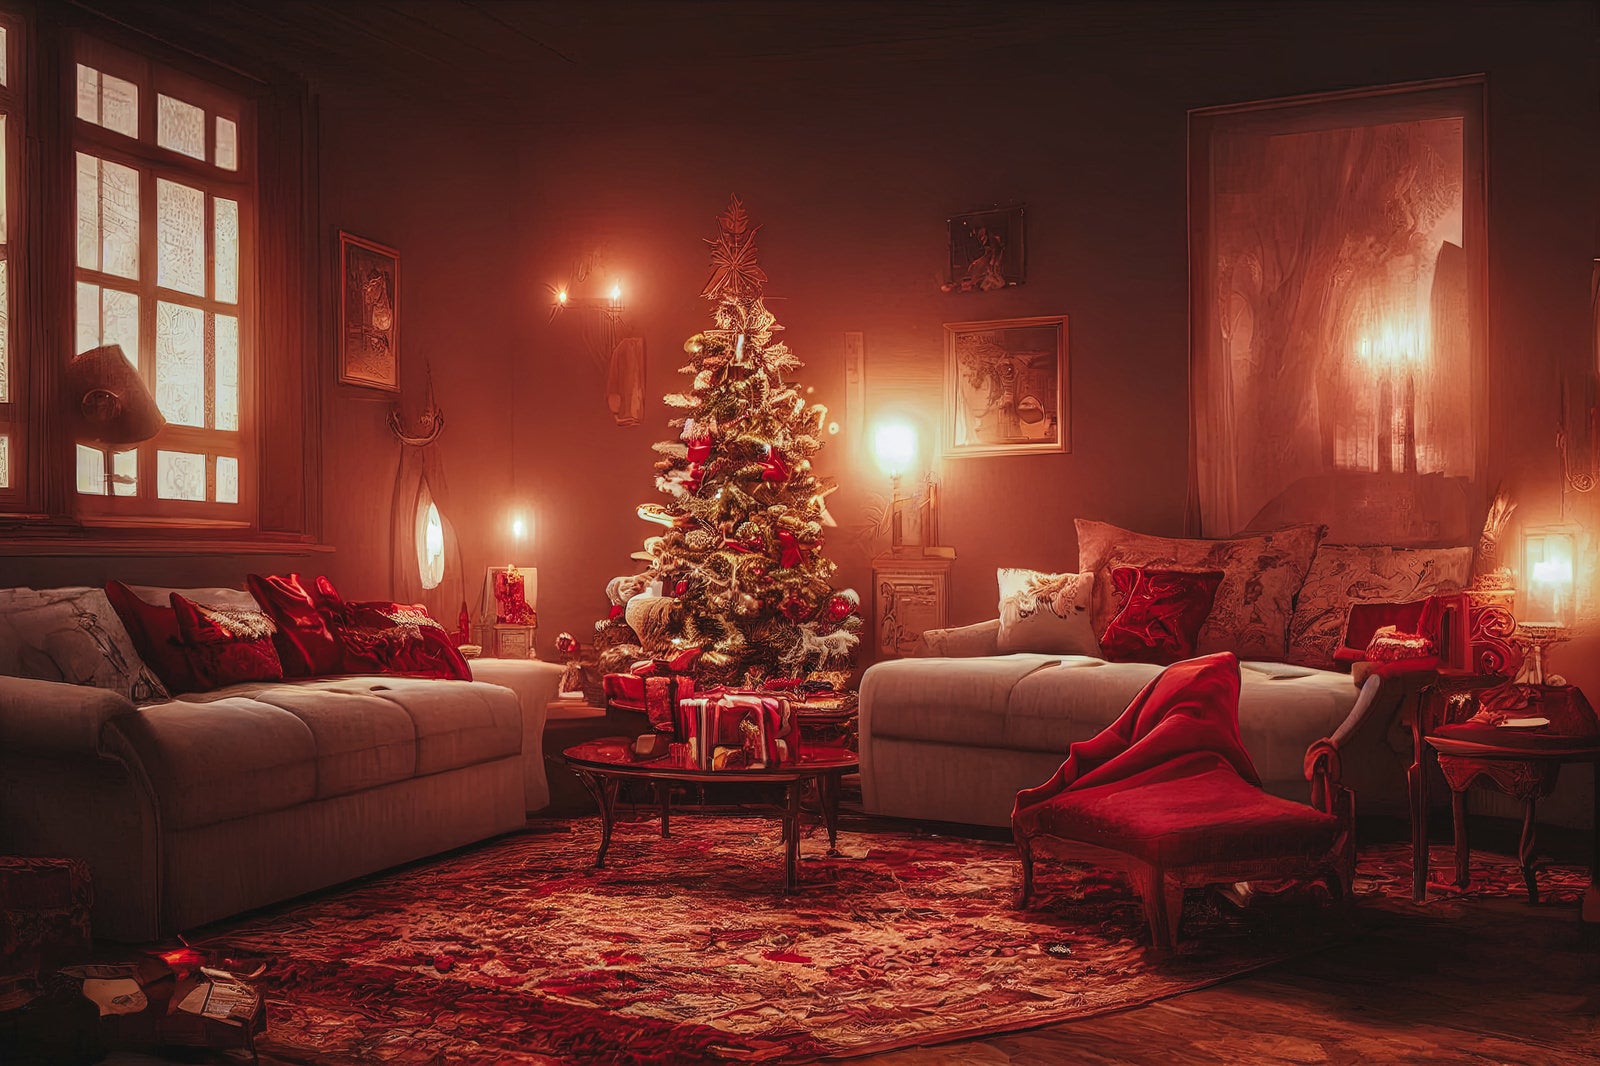 「クリスマスツリーが中央に置かれライトアップされた室内」の写真